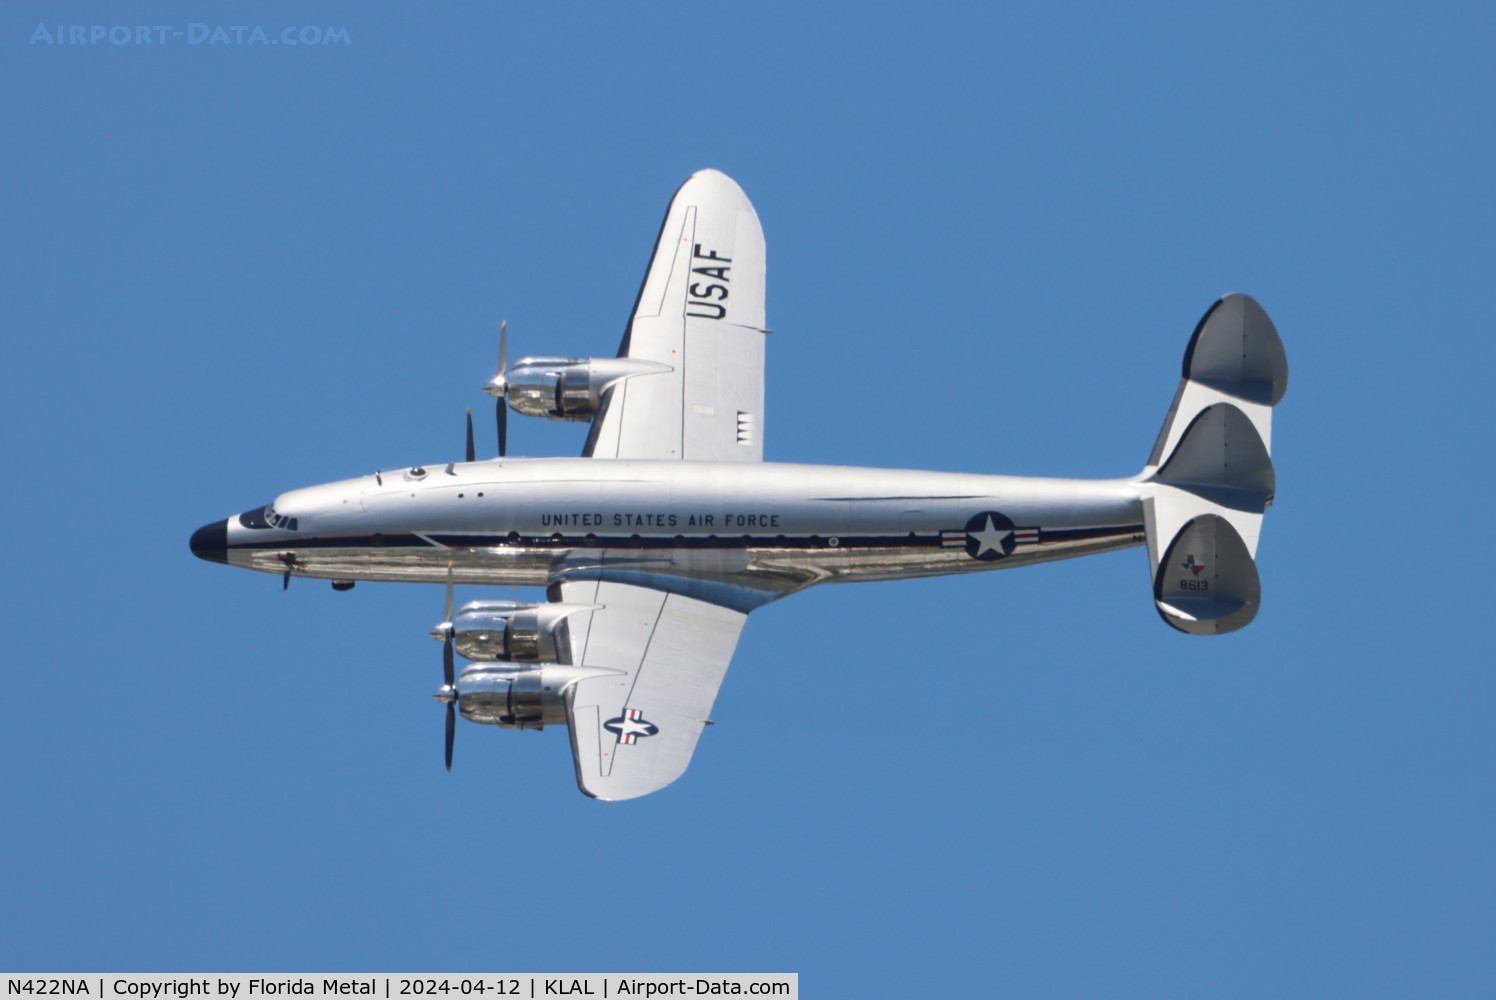 N422NA, 1948 Lockheed C-121A Constellation C/N 48-613 (2605), C-121 zx